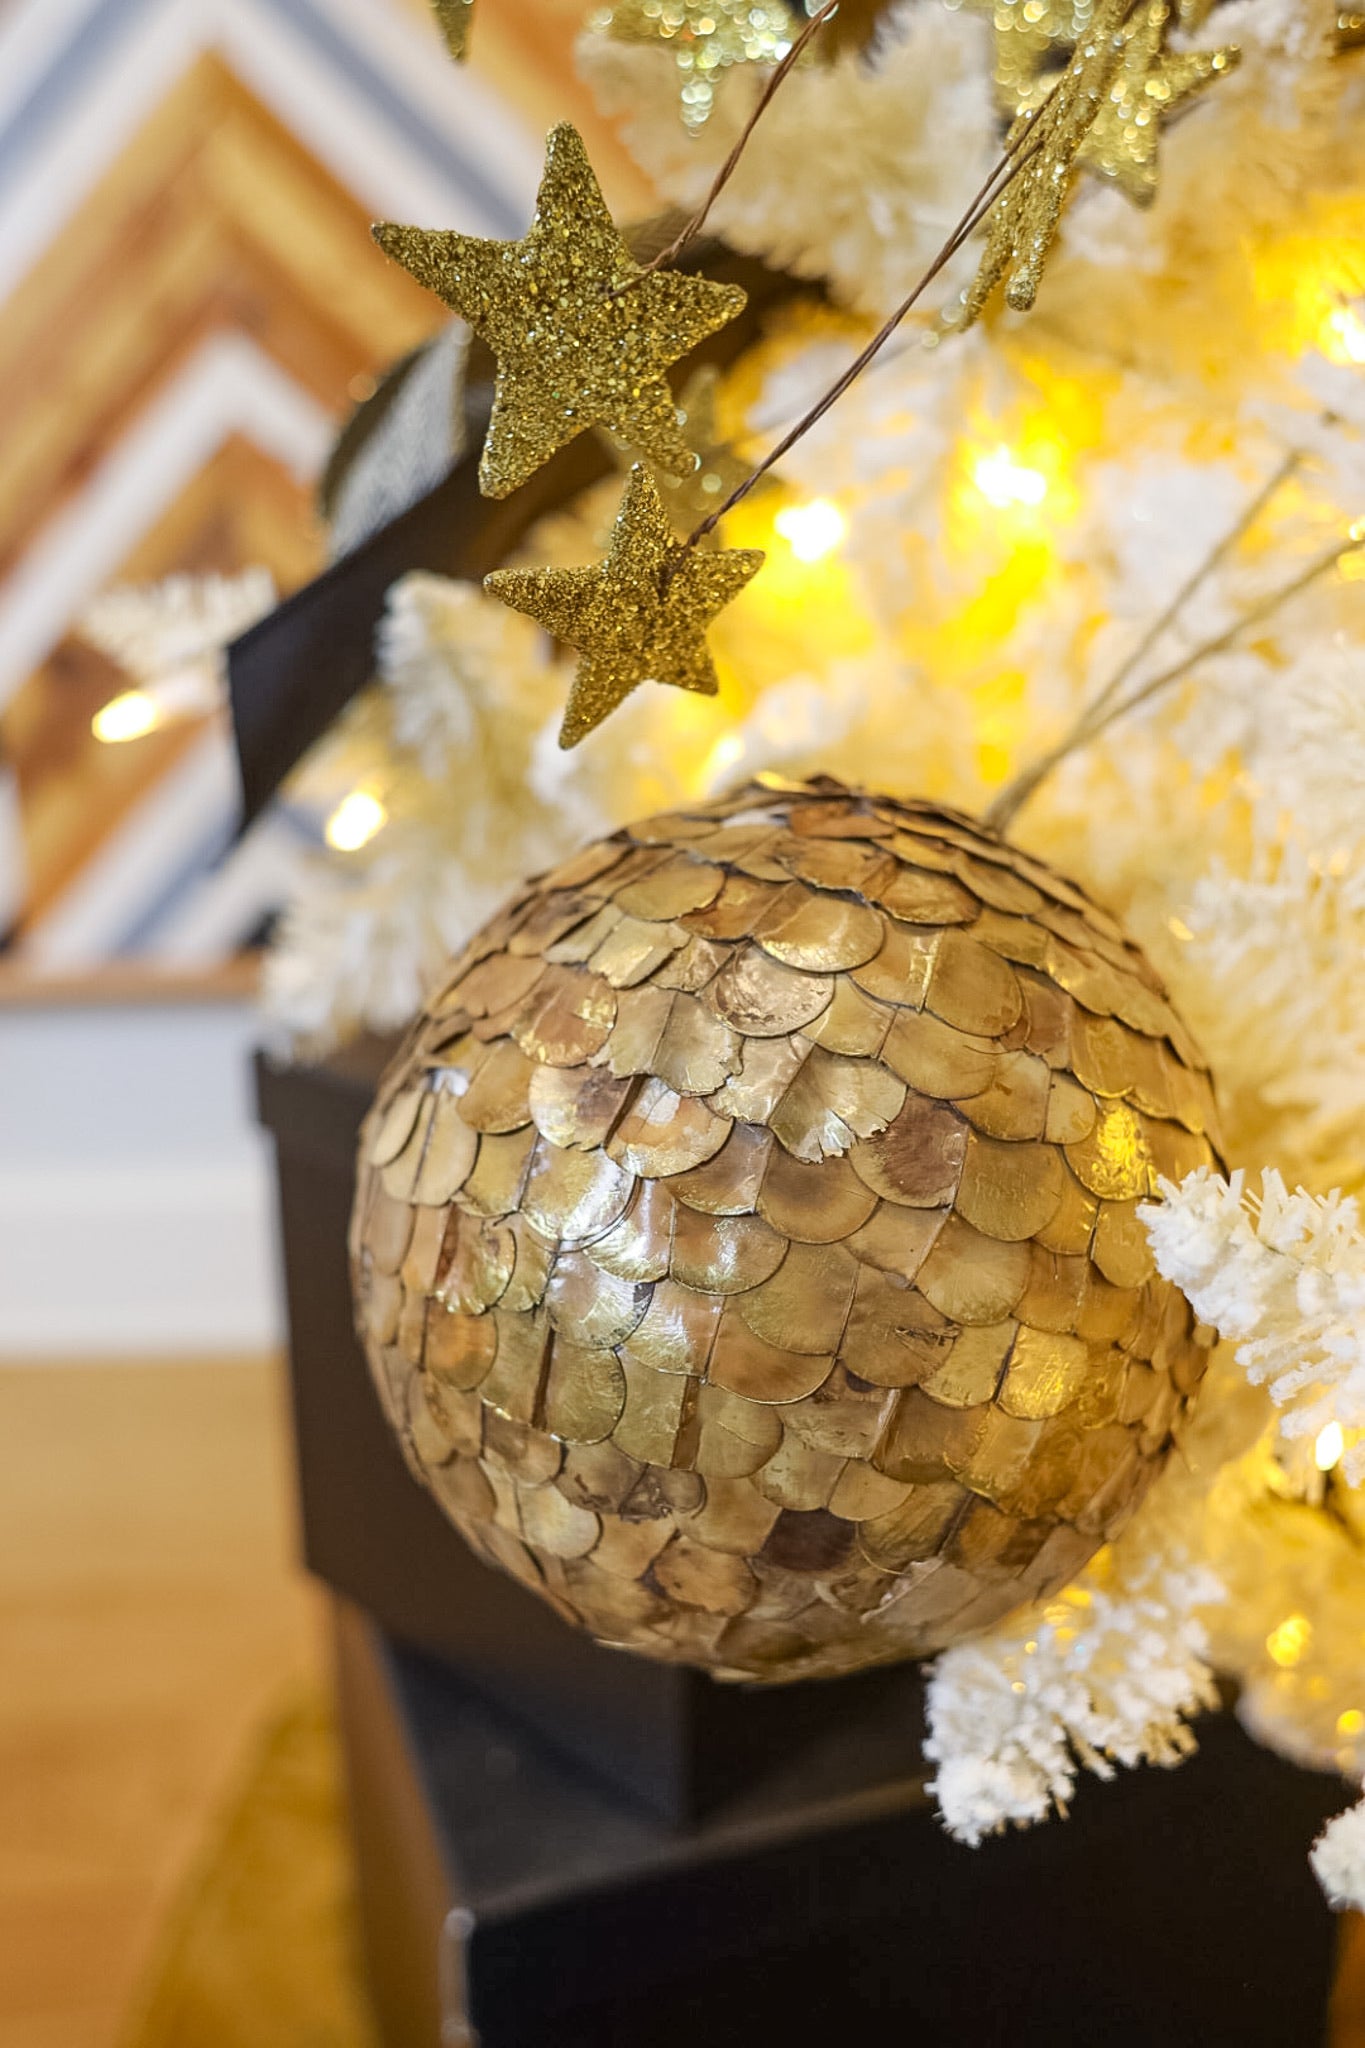 Golden Pod Ball Ornament